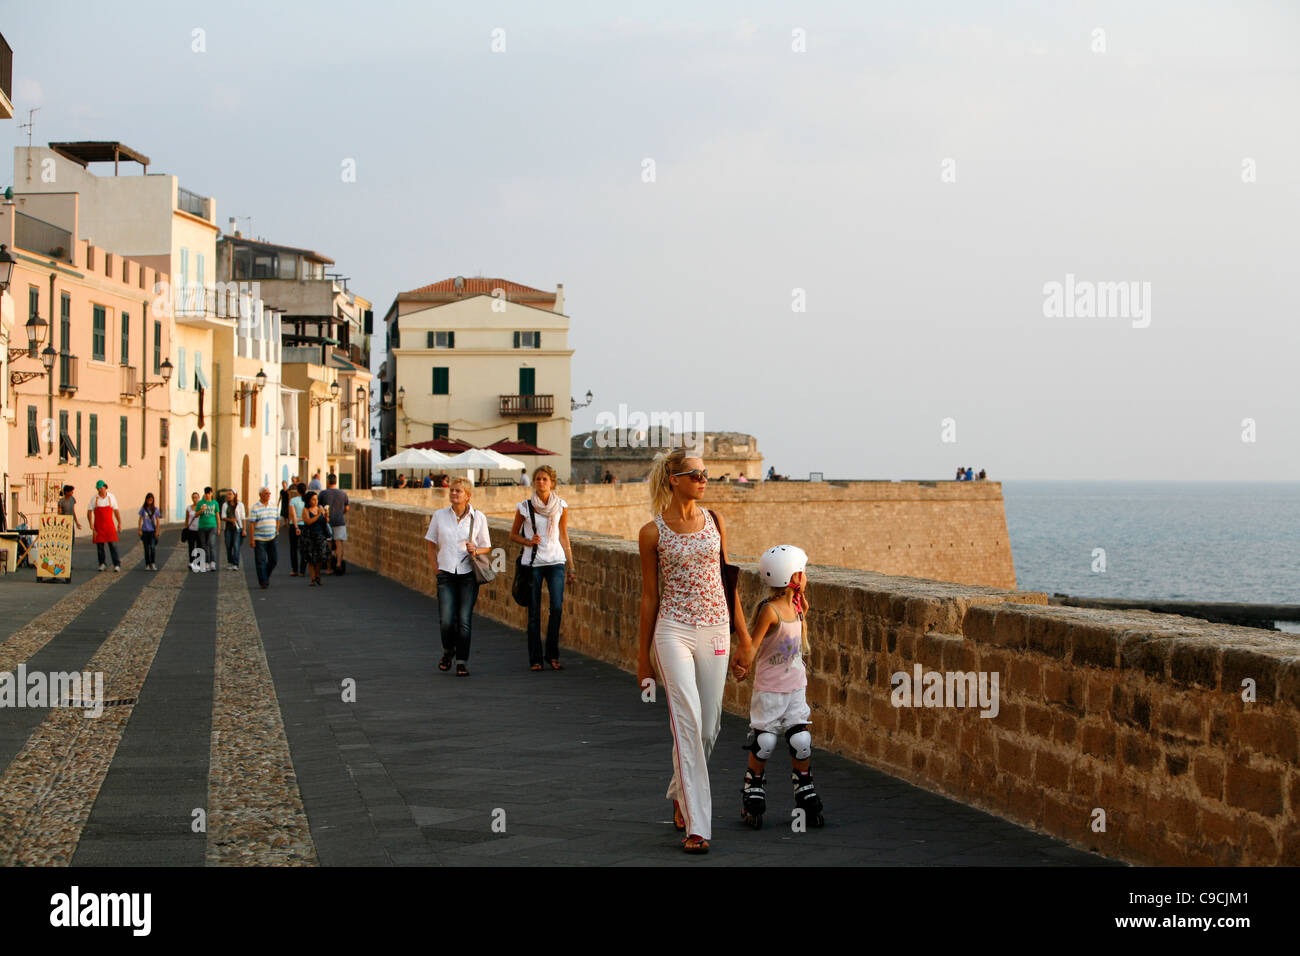 El paseo a lo largo de las murallas de la ciudad, Alghero (Cerdeña, Italia). Foto de stock